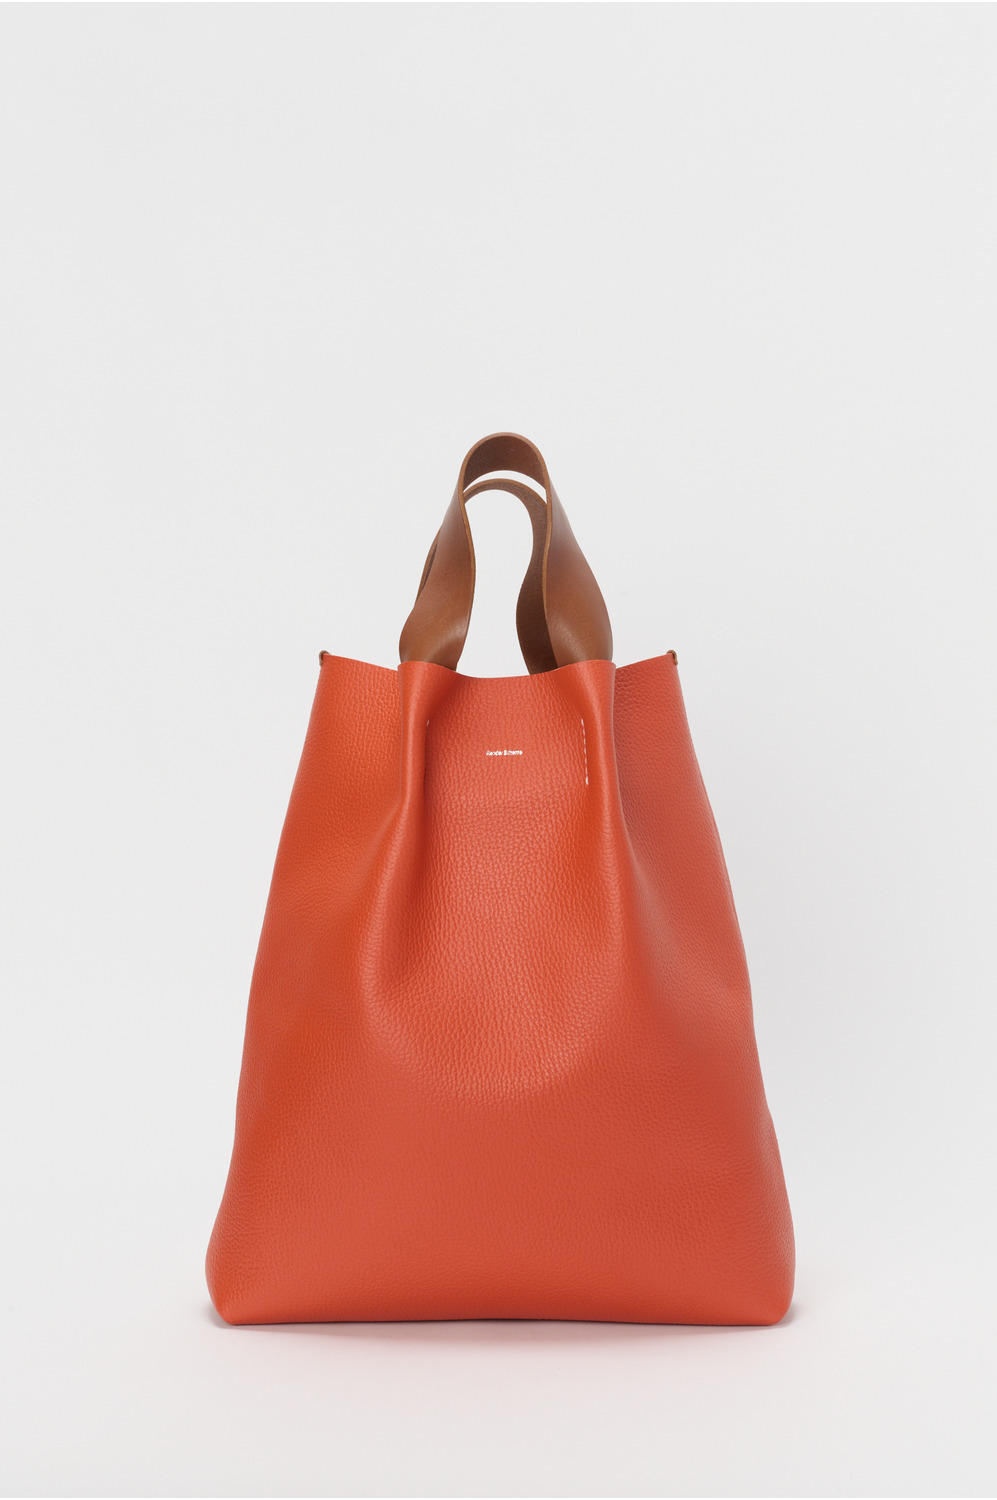 piano bag 詳細画像 copper orange 1